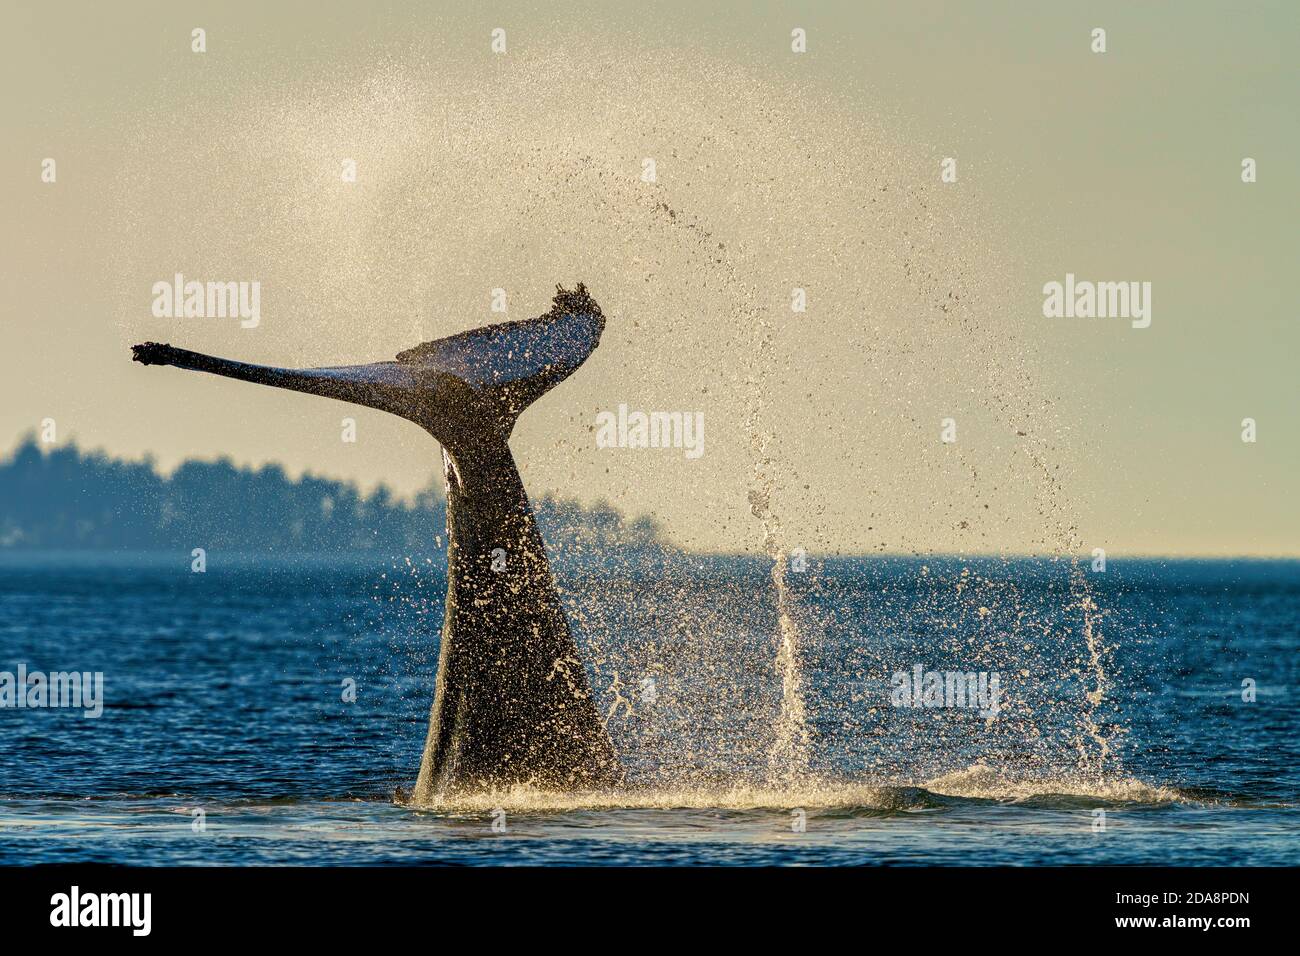 Queue de baleine à bosse qui claque en fin d'après-midi au large de l'île de Vancouver, Colombie-Britannique, Canada Banque D'Images